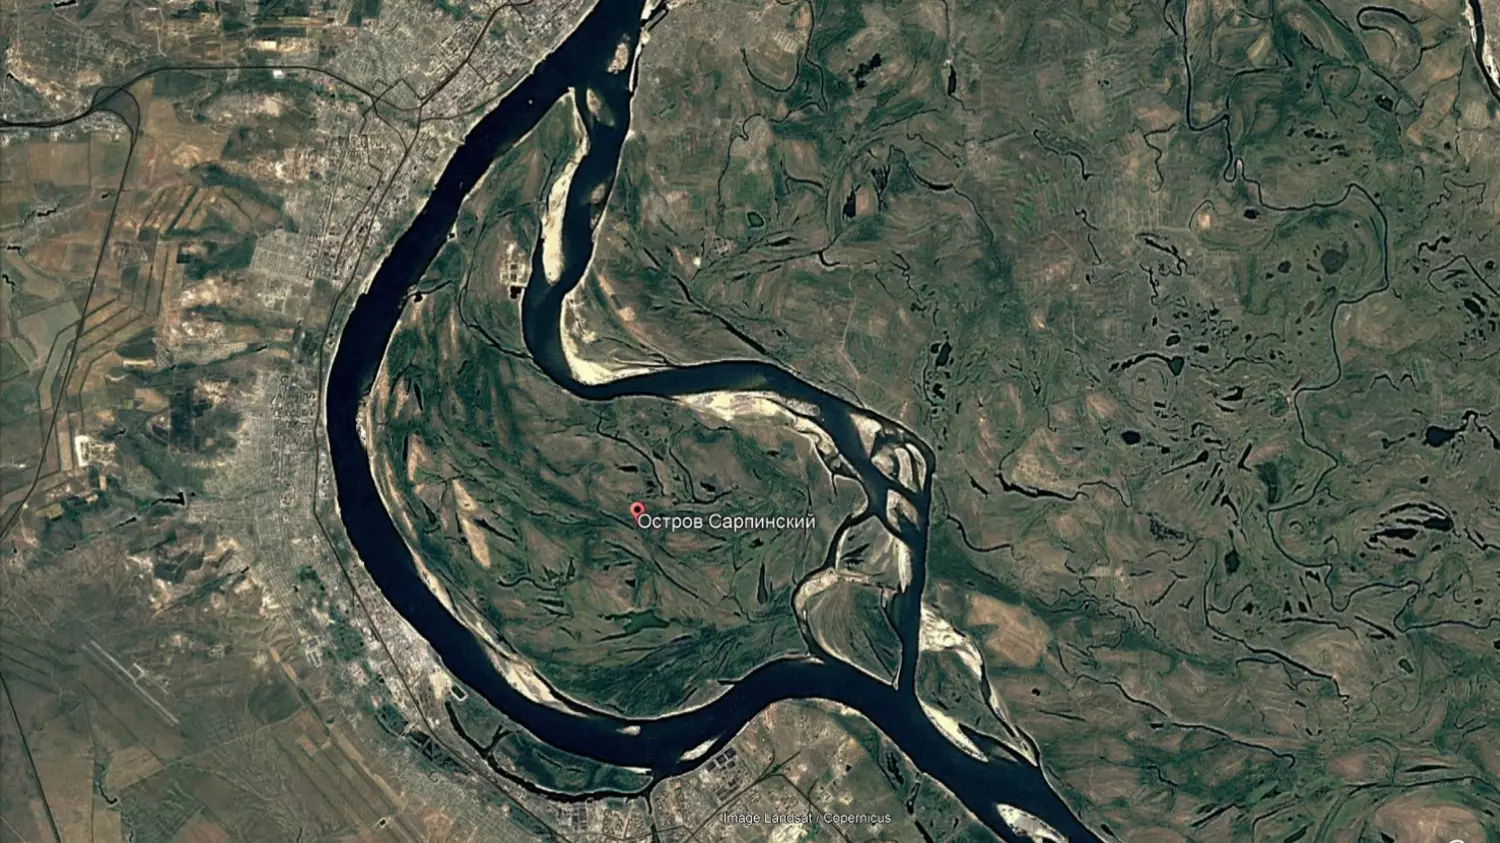 Так выглядела береговая линия Сарпинского в 2000 году